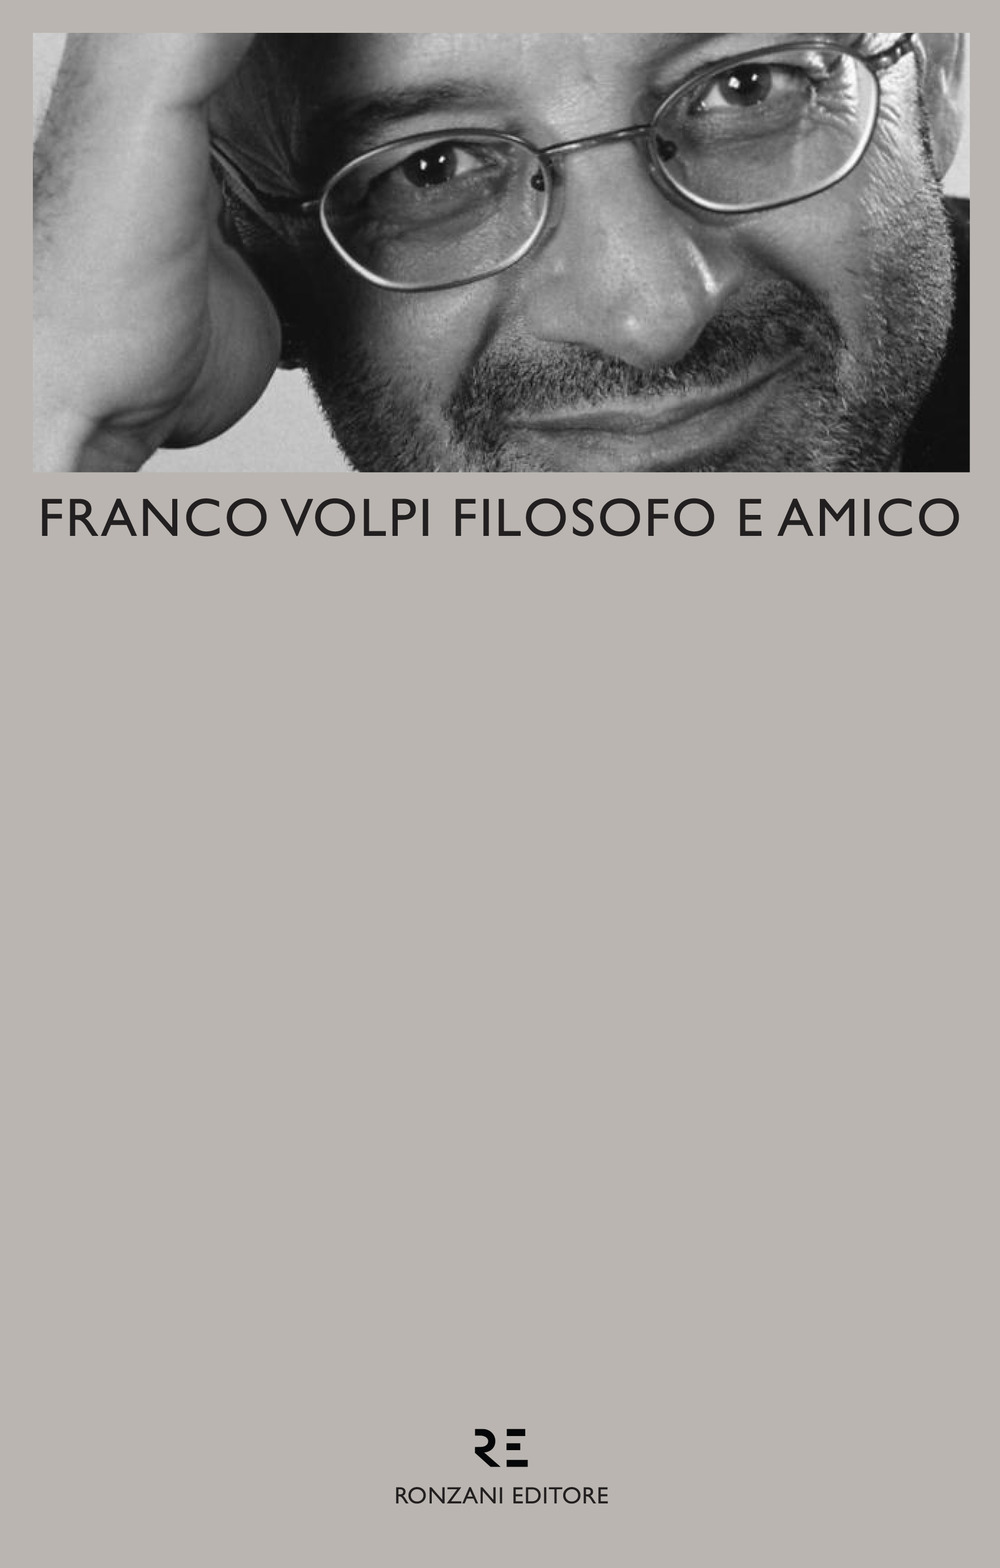 Libri Franco Volpi Filosofo E Amico NUOVO SIGILLATO, EDIZIONE DEL 10/04/2019 SUBITO DISPONIBILE